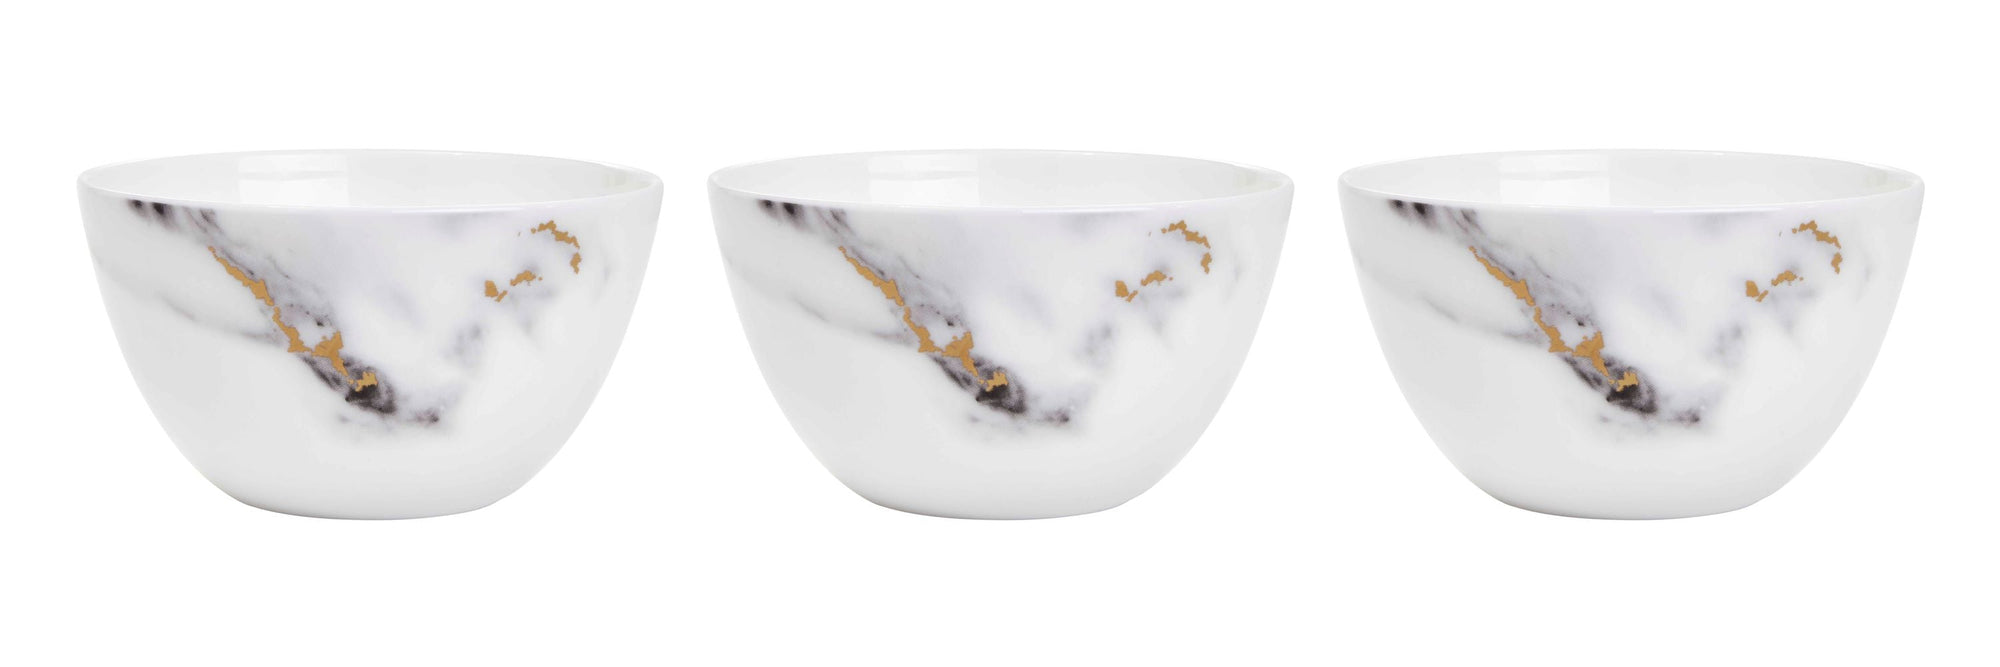 Prouna Marble Venice Fog Set of 3, Nut & Olive Bowls White Background Photo